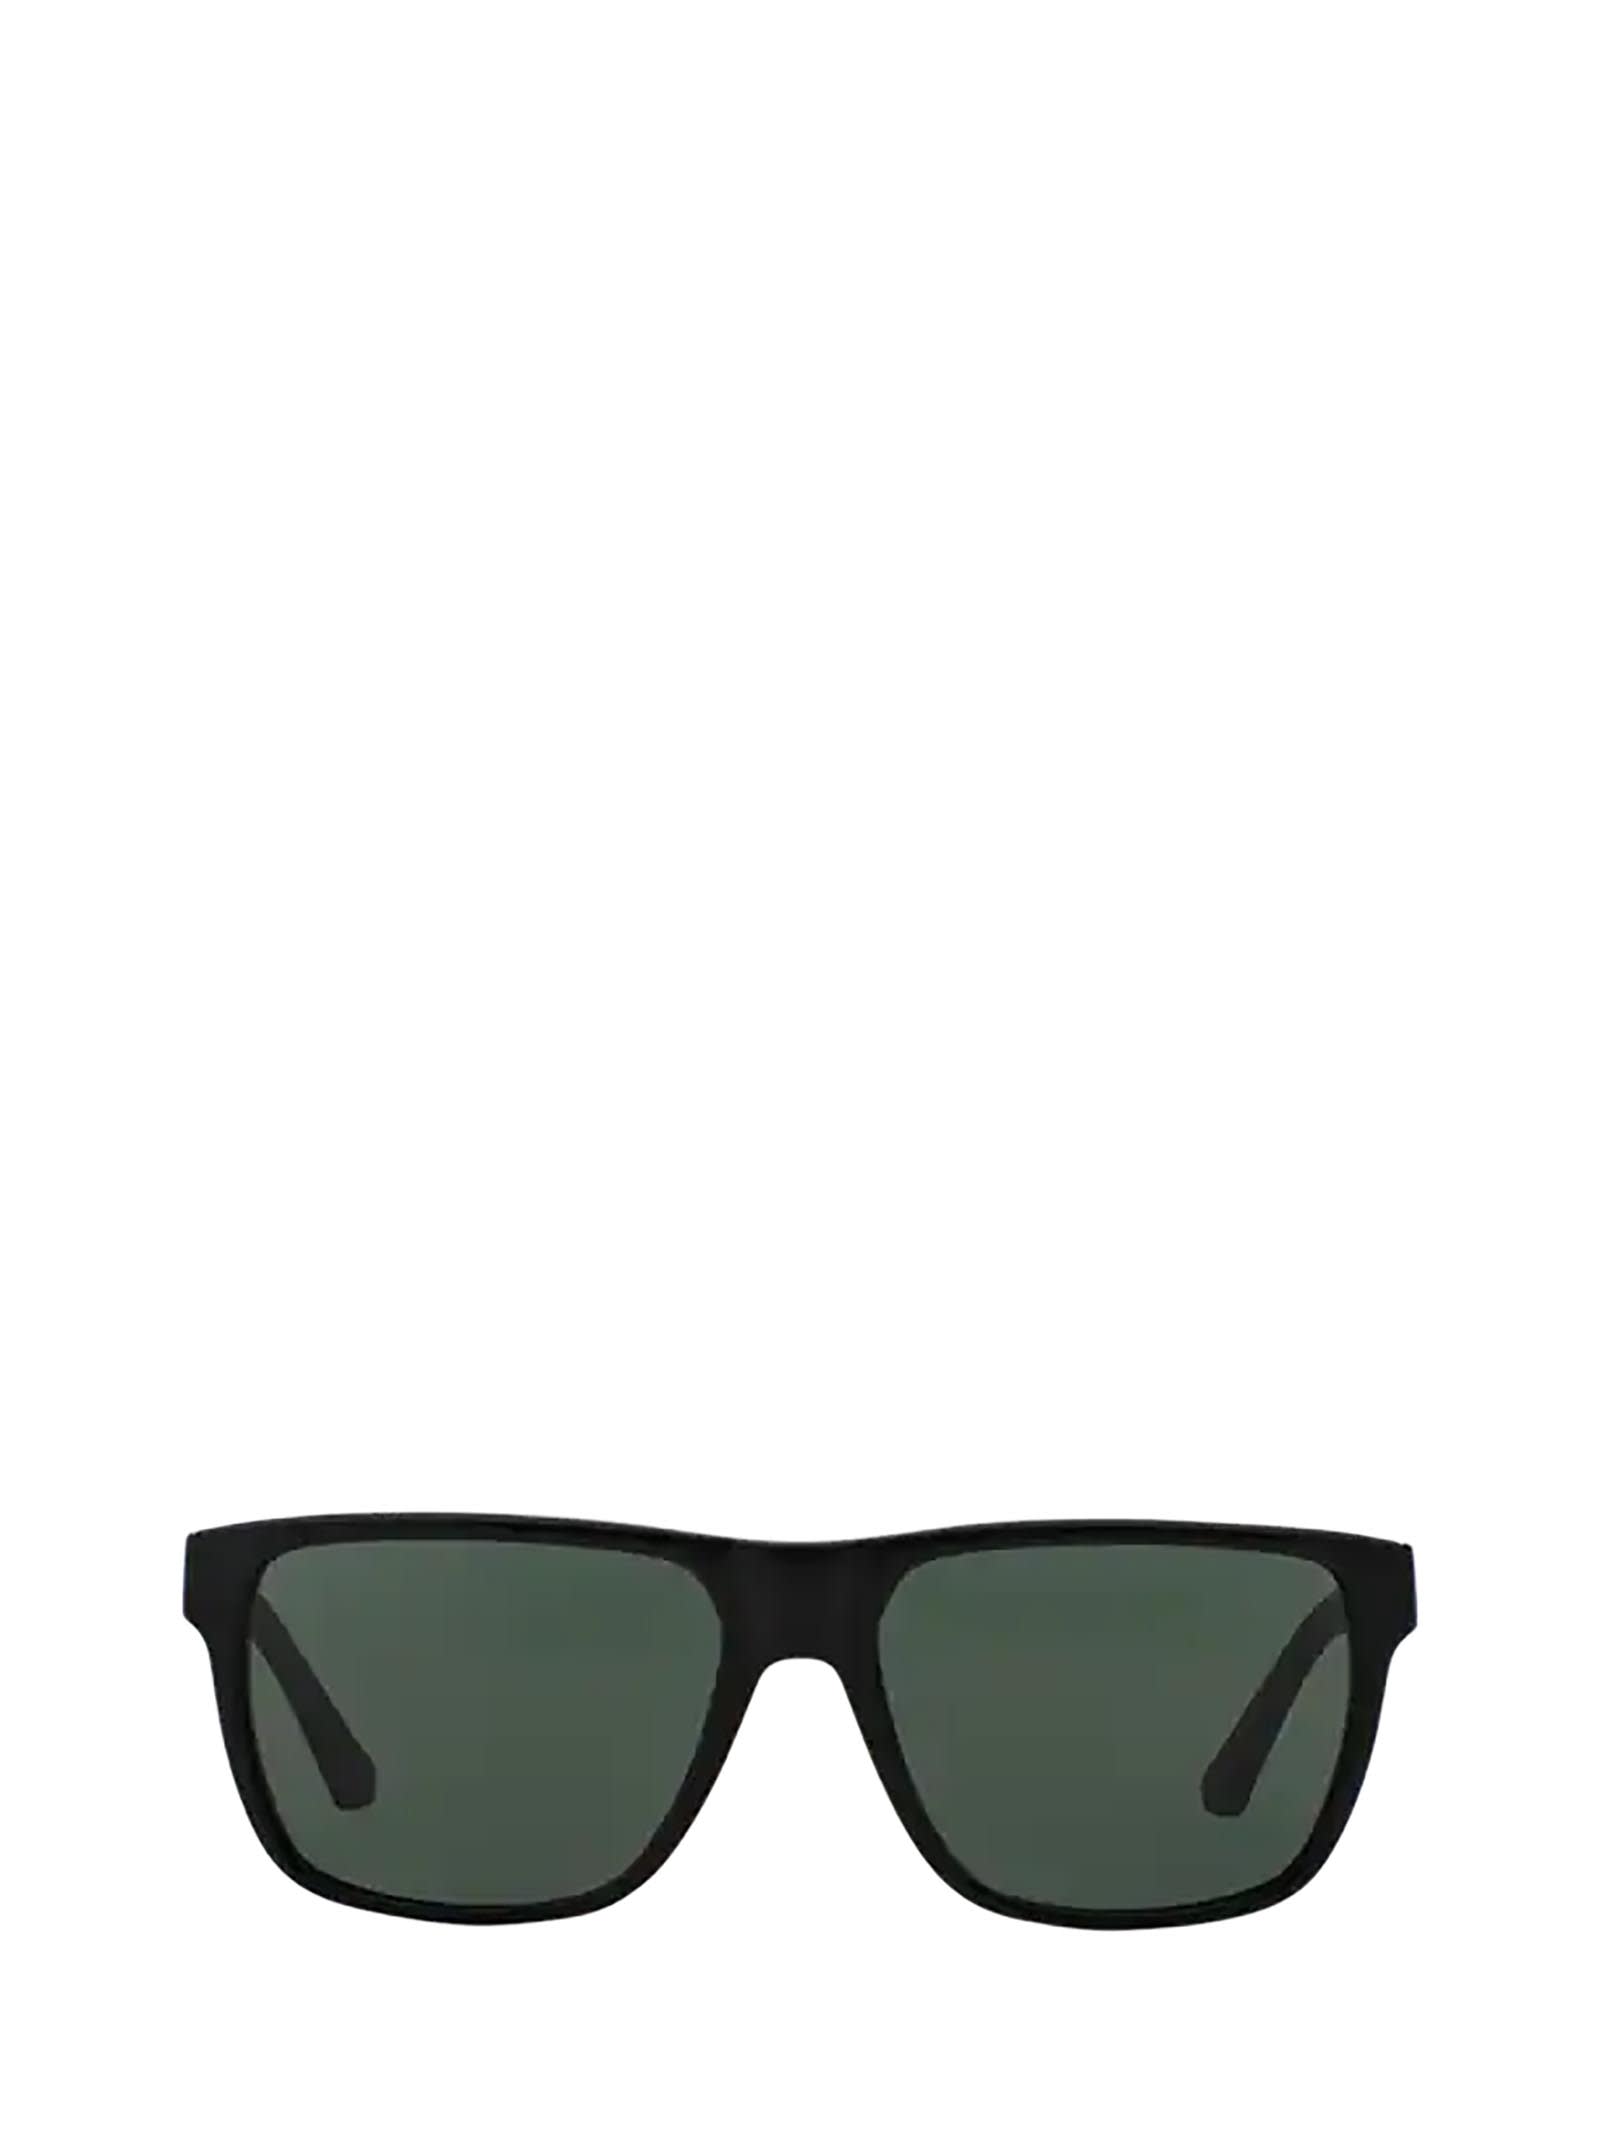 Emporio Armani Emporio Armani Ea4035 Shiny Black Sunglasses